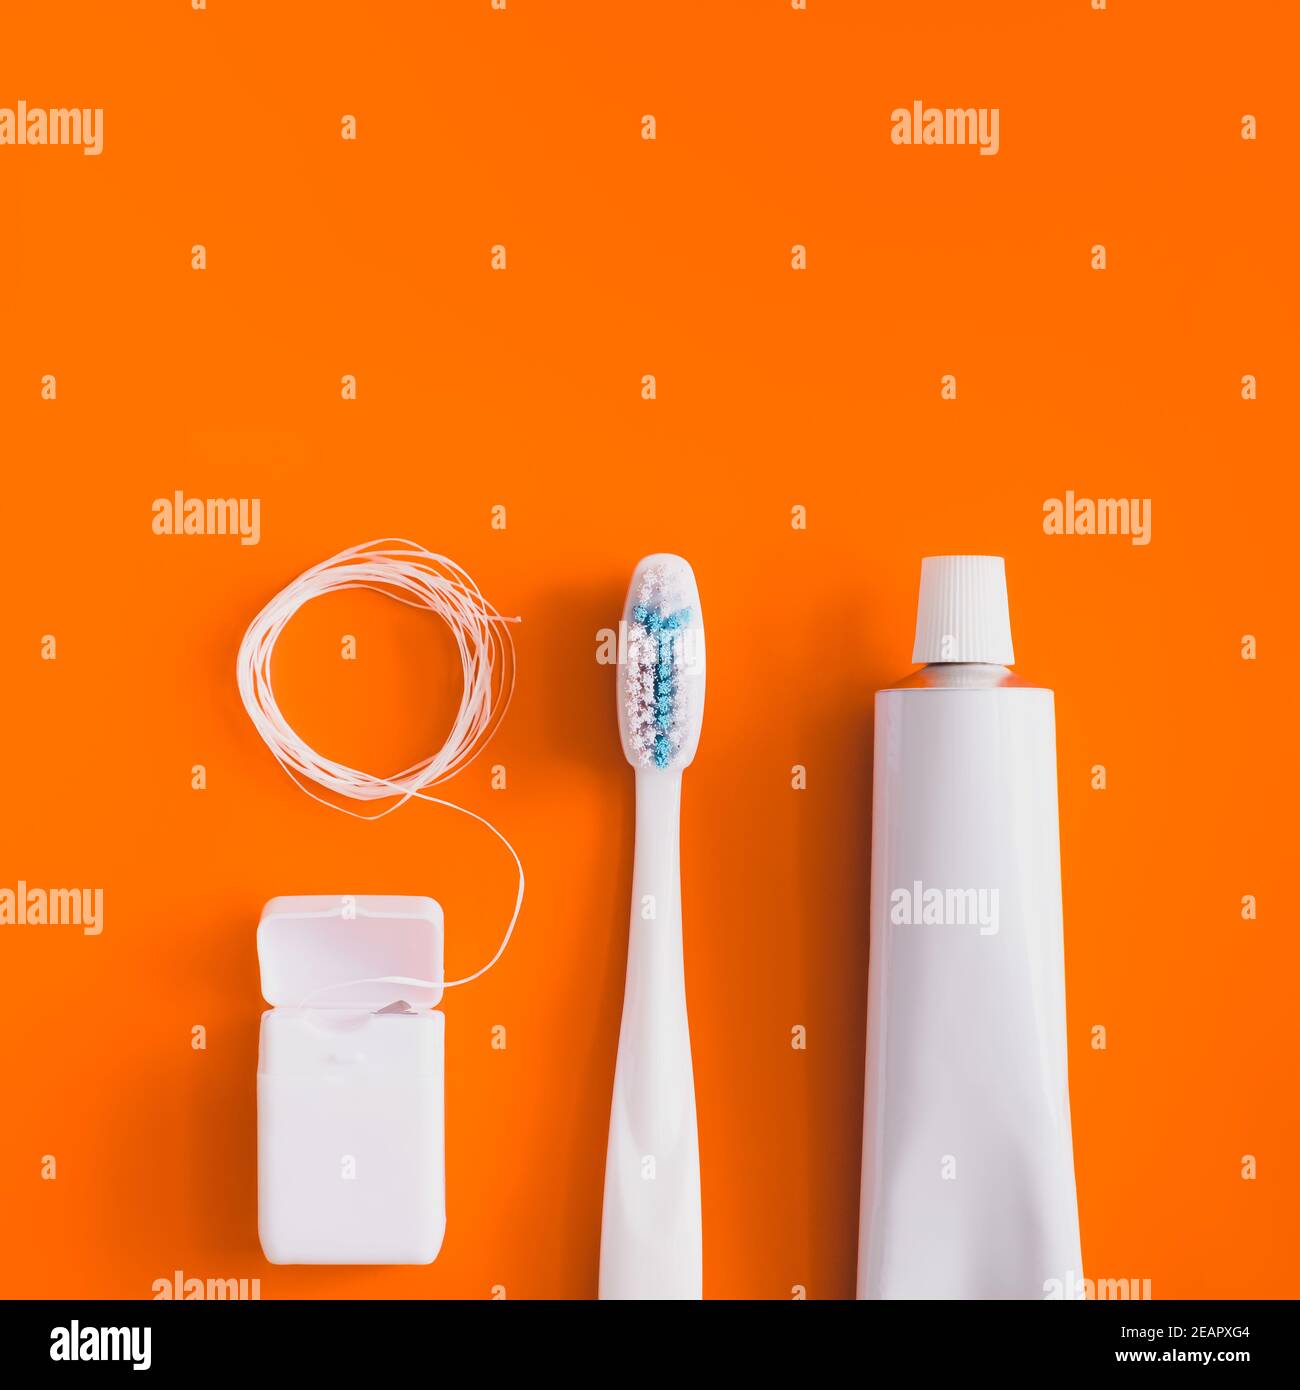 Objets d'hygiène dentaire : brosse à dents, dentifrice et soie dentaire. Accessoires génériques blancs pour maintenir la santé des dents sur fond orange vif Banque D'Images